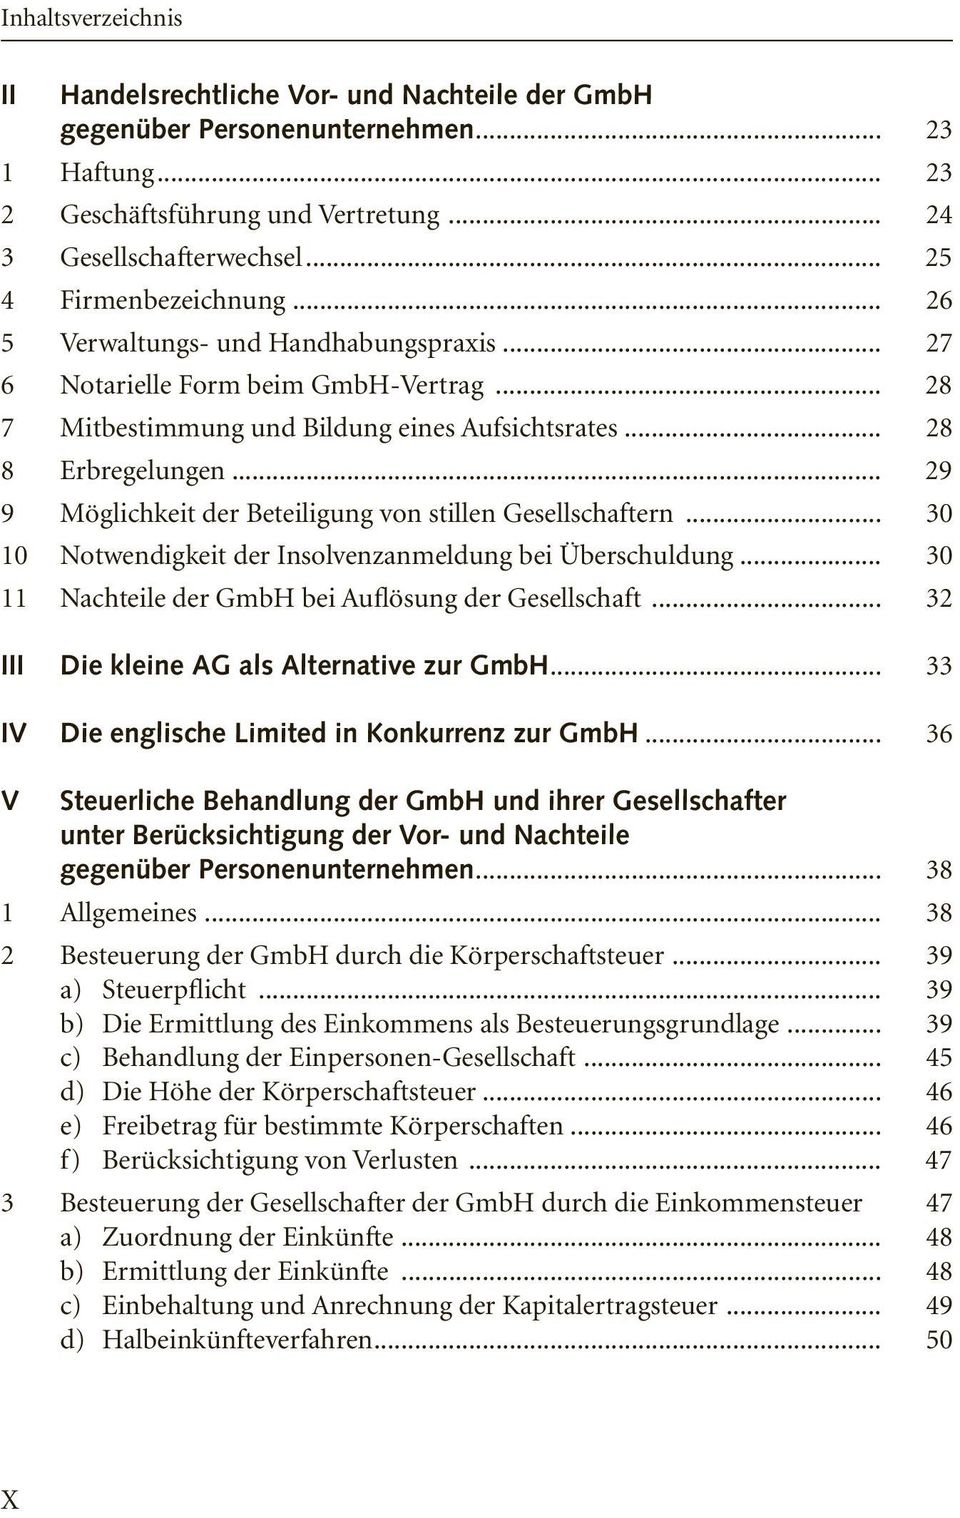 .. 29 9 Möglichkeit der Beteiligung von stillen Gesellschaftern... 30 10 Notwendigkeit der Insolvenzanmeldung bei Überschuldung... 30 11 Nachteile der GmbH bei Auflösung der Gesellschaft.